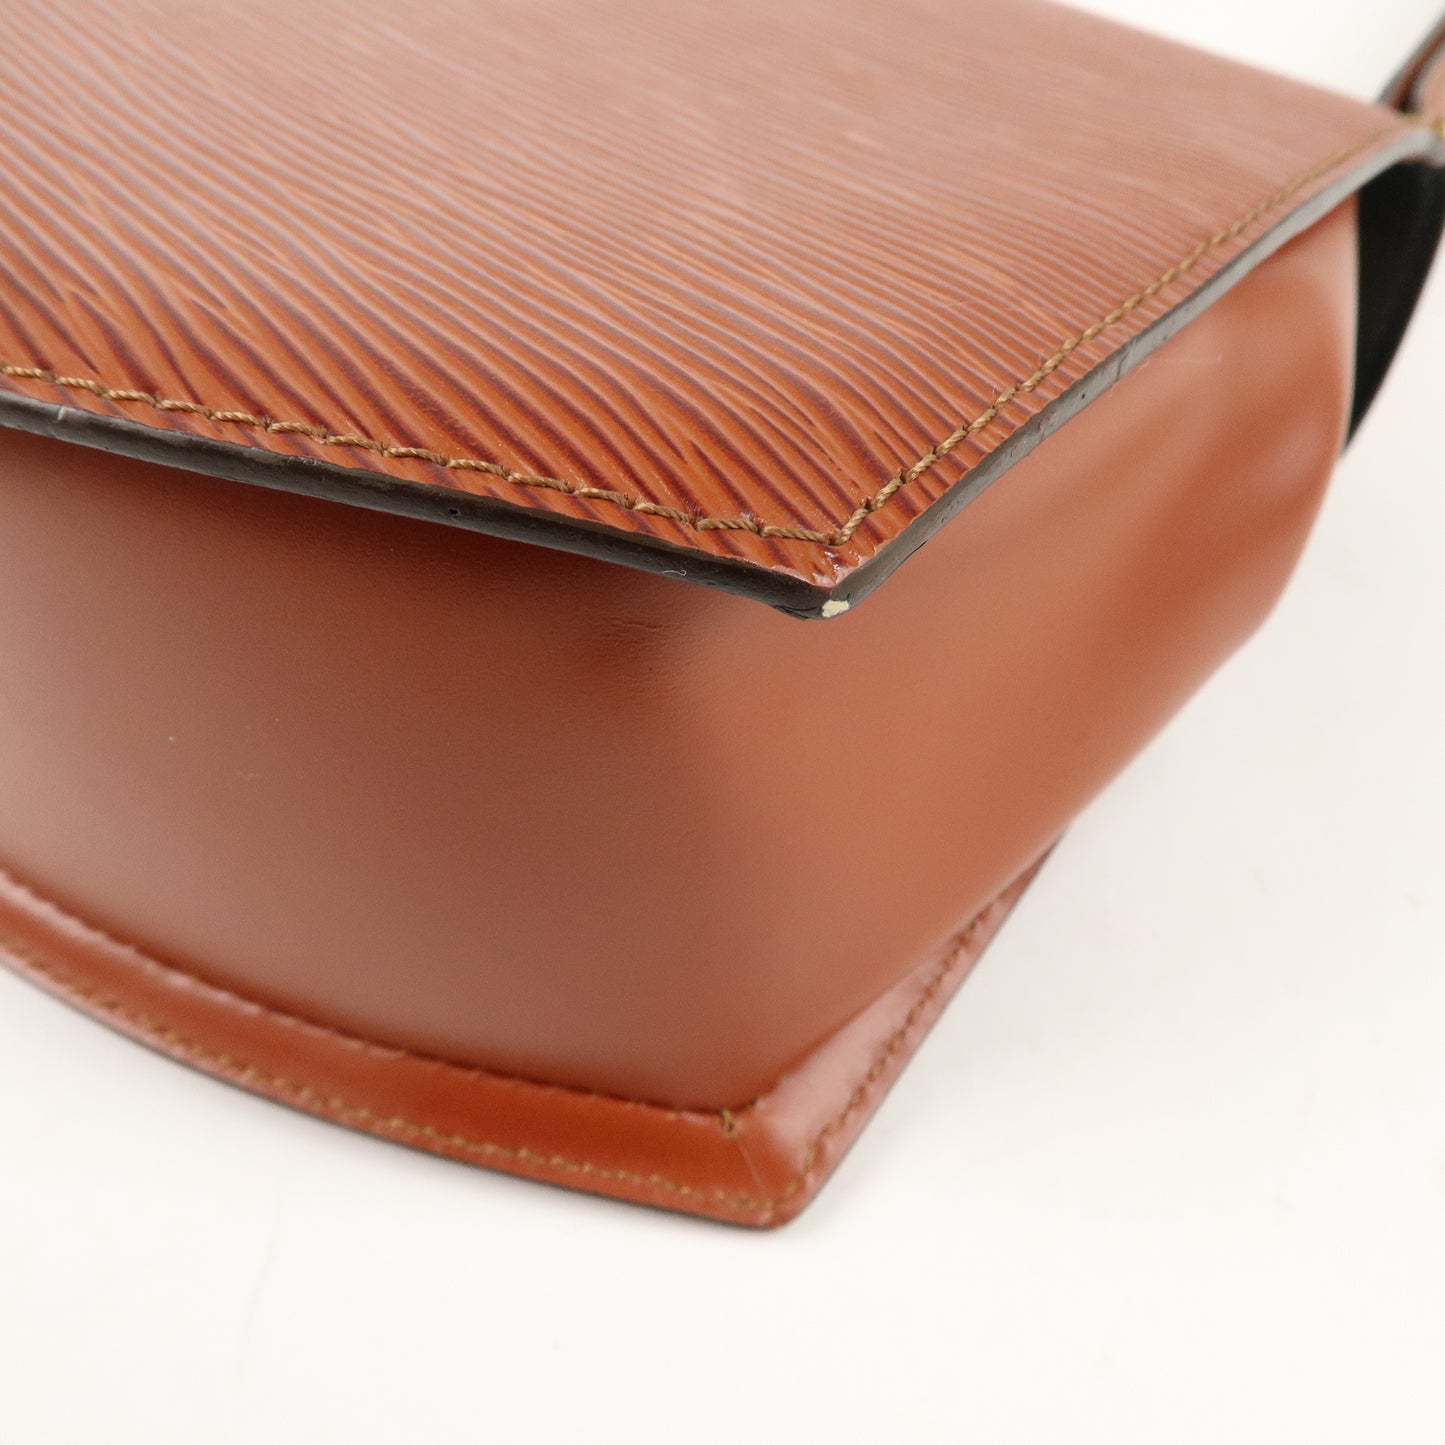 Louis Vuitton Epi Tilsit Shoulder Hand Bag Kenya Brown M52483